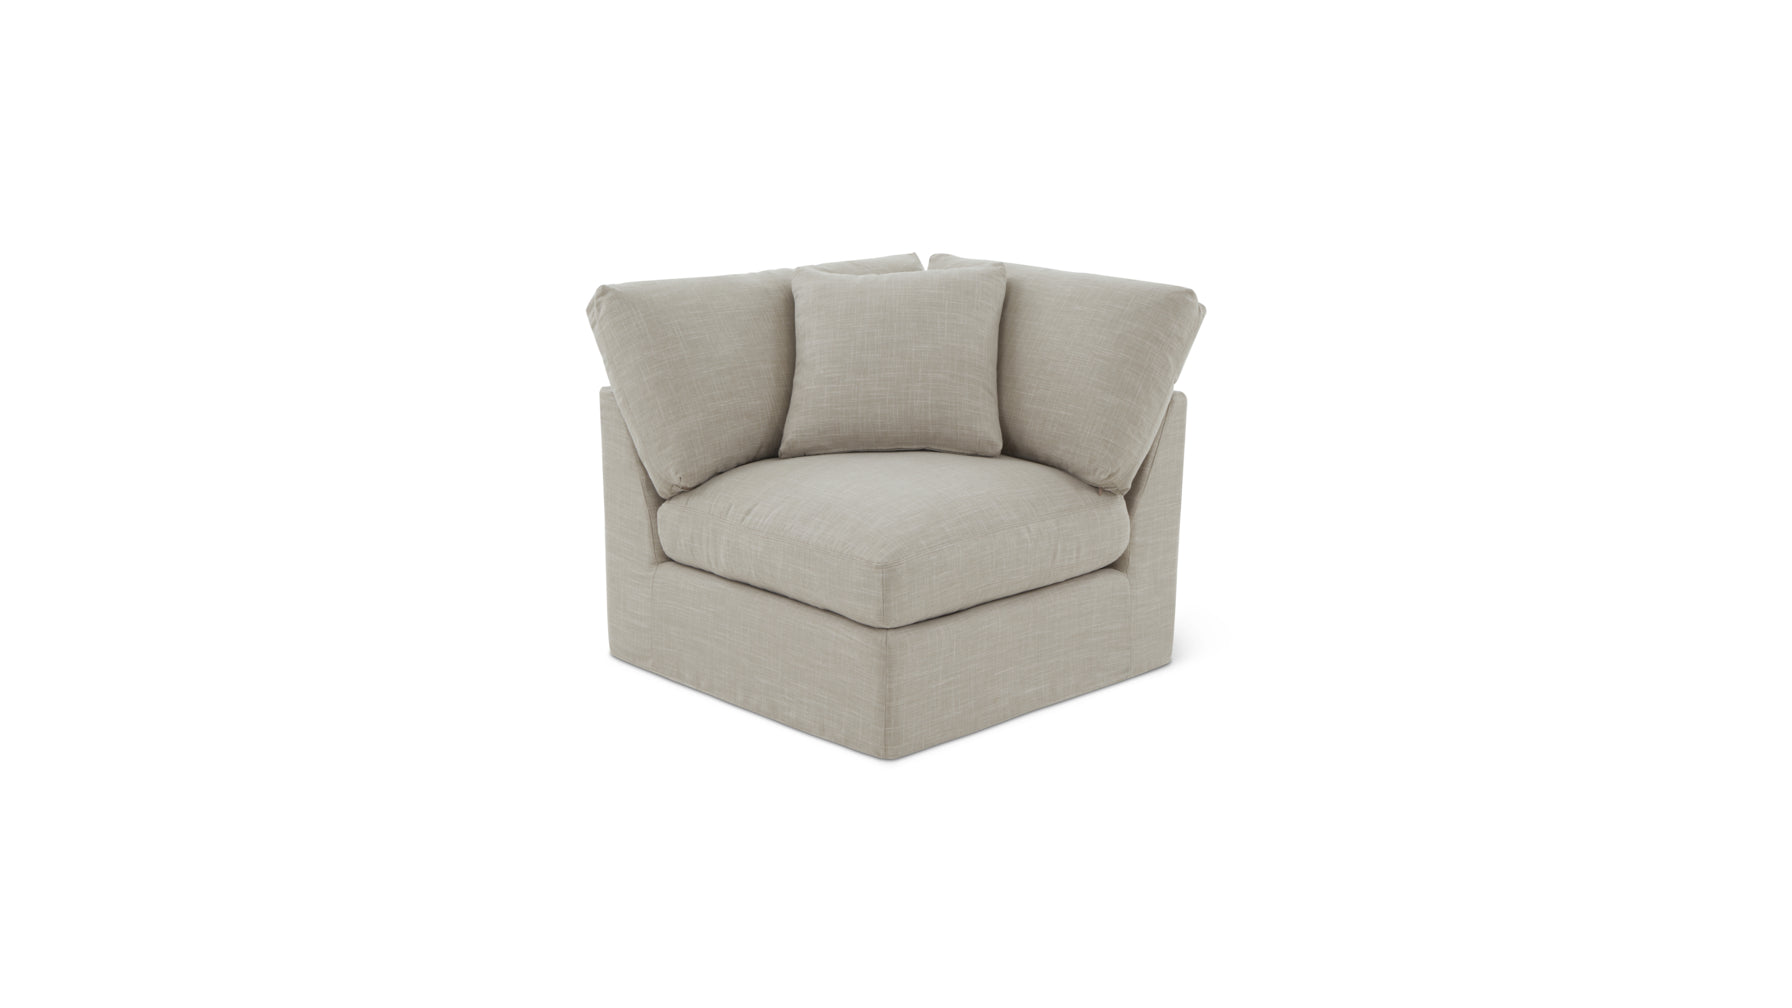 Get Together™ Corner Chair, Standard, Light Pebble - Image 6